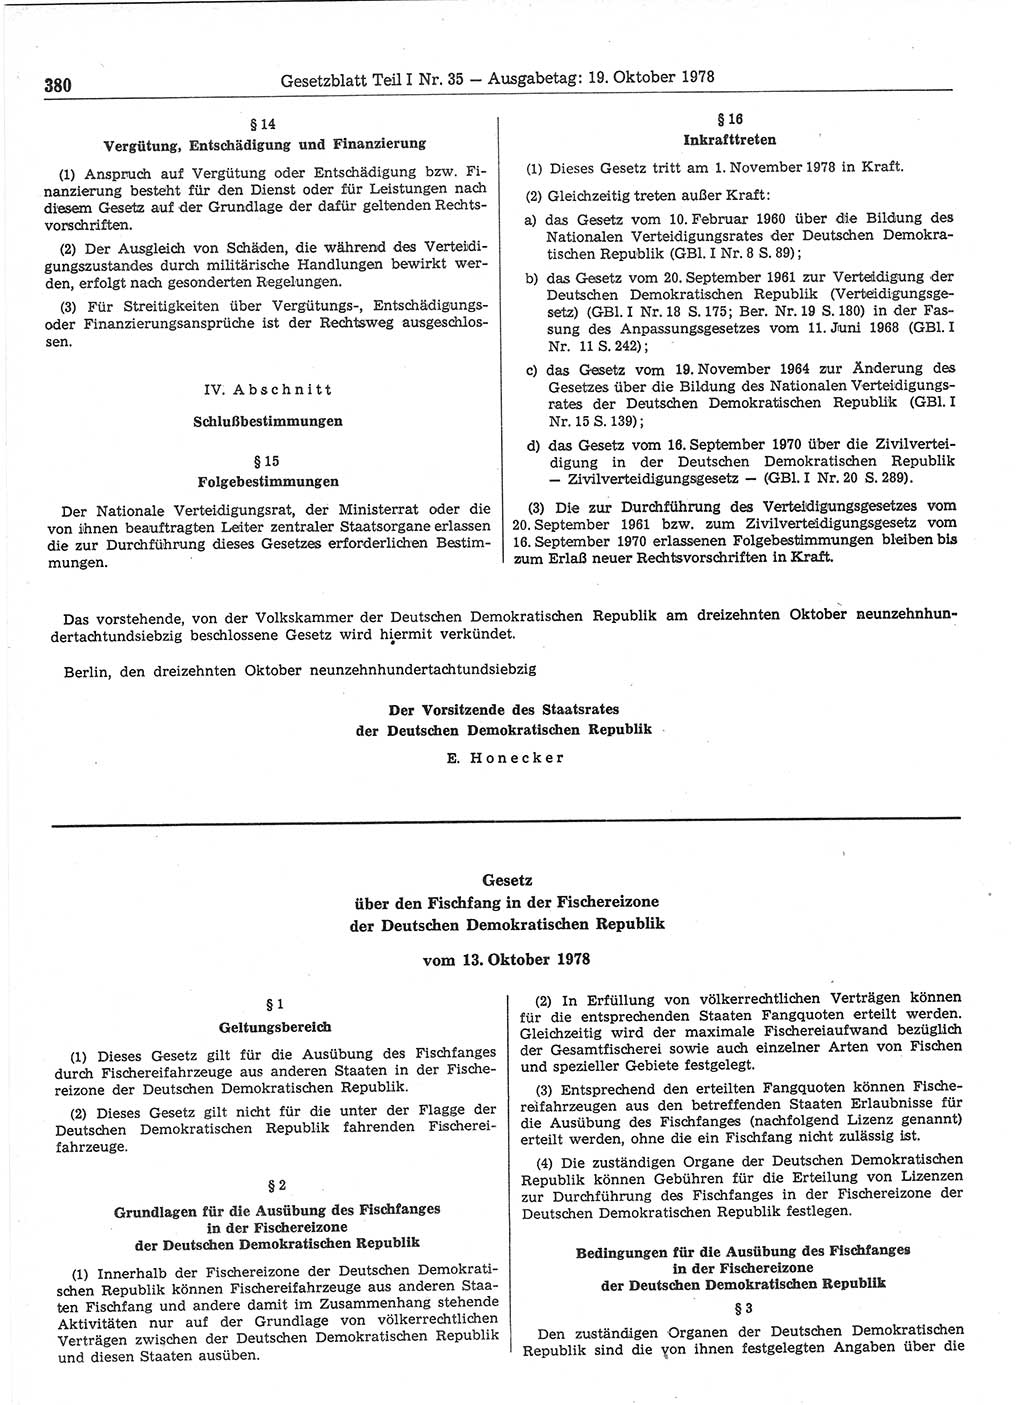 Gesetzblatt (GBl.) der Deutschen Demokratischen Republik (DDR) Teil Ⅰ 1978, Seite 380 (GBl. DDR Ⅰ 1978, S. 380)